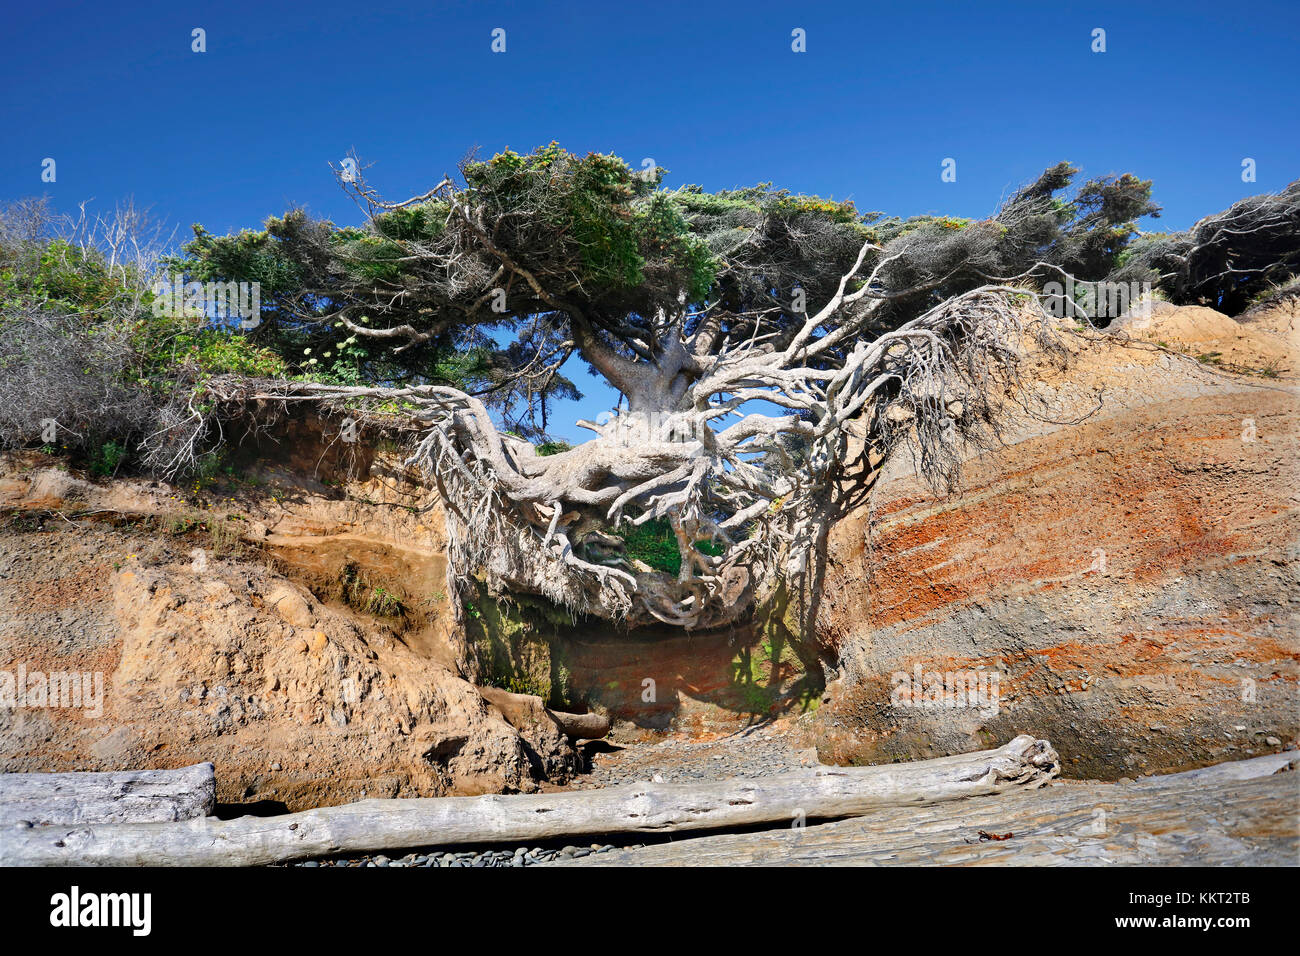 L'Albero della Vita, in Kakaloch,WA ha quasi tutte le sue radici esposte a causa dell erosione del suolo, eppure rimane in posizione verticale e i germogli verdi foglie ogni anno. Foto Stock